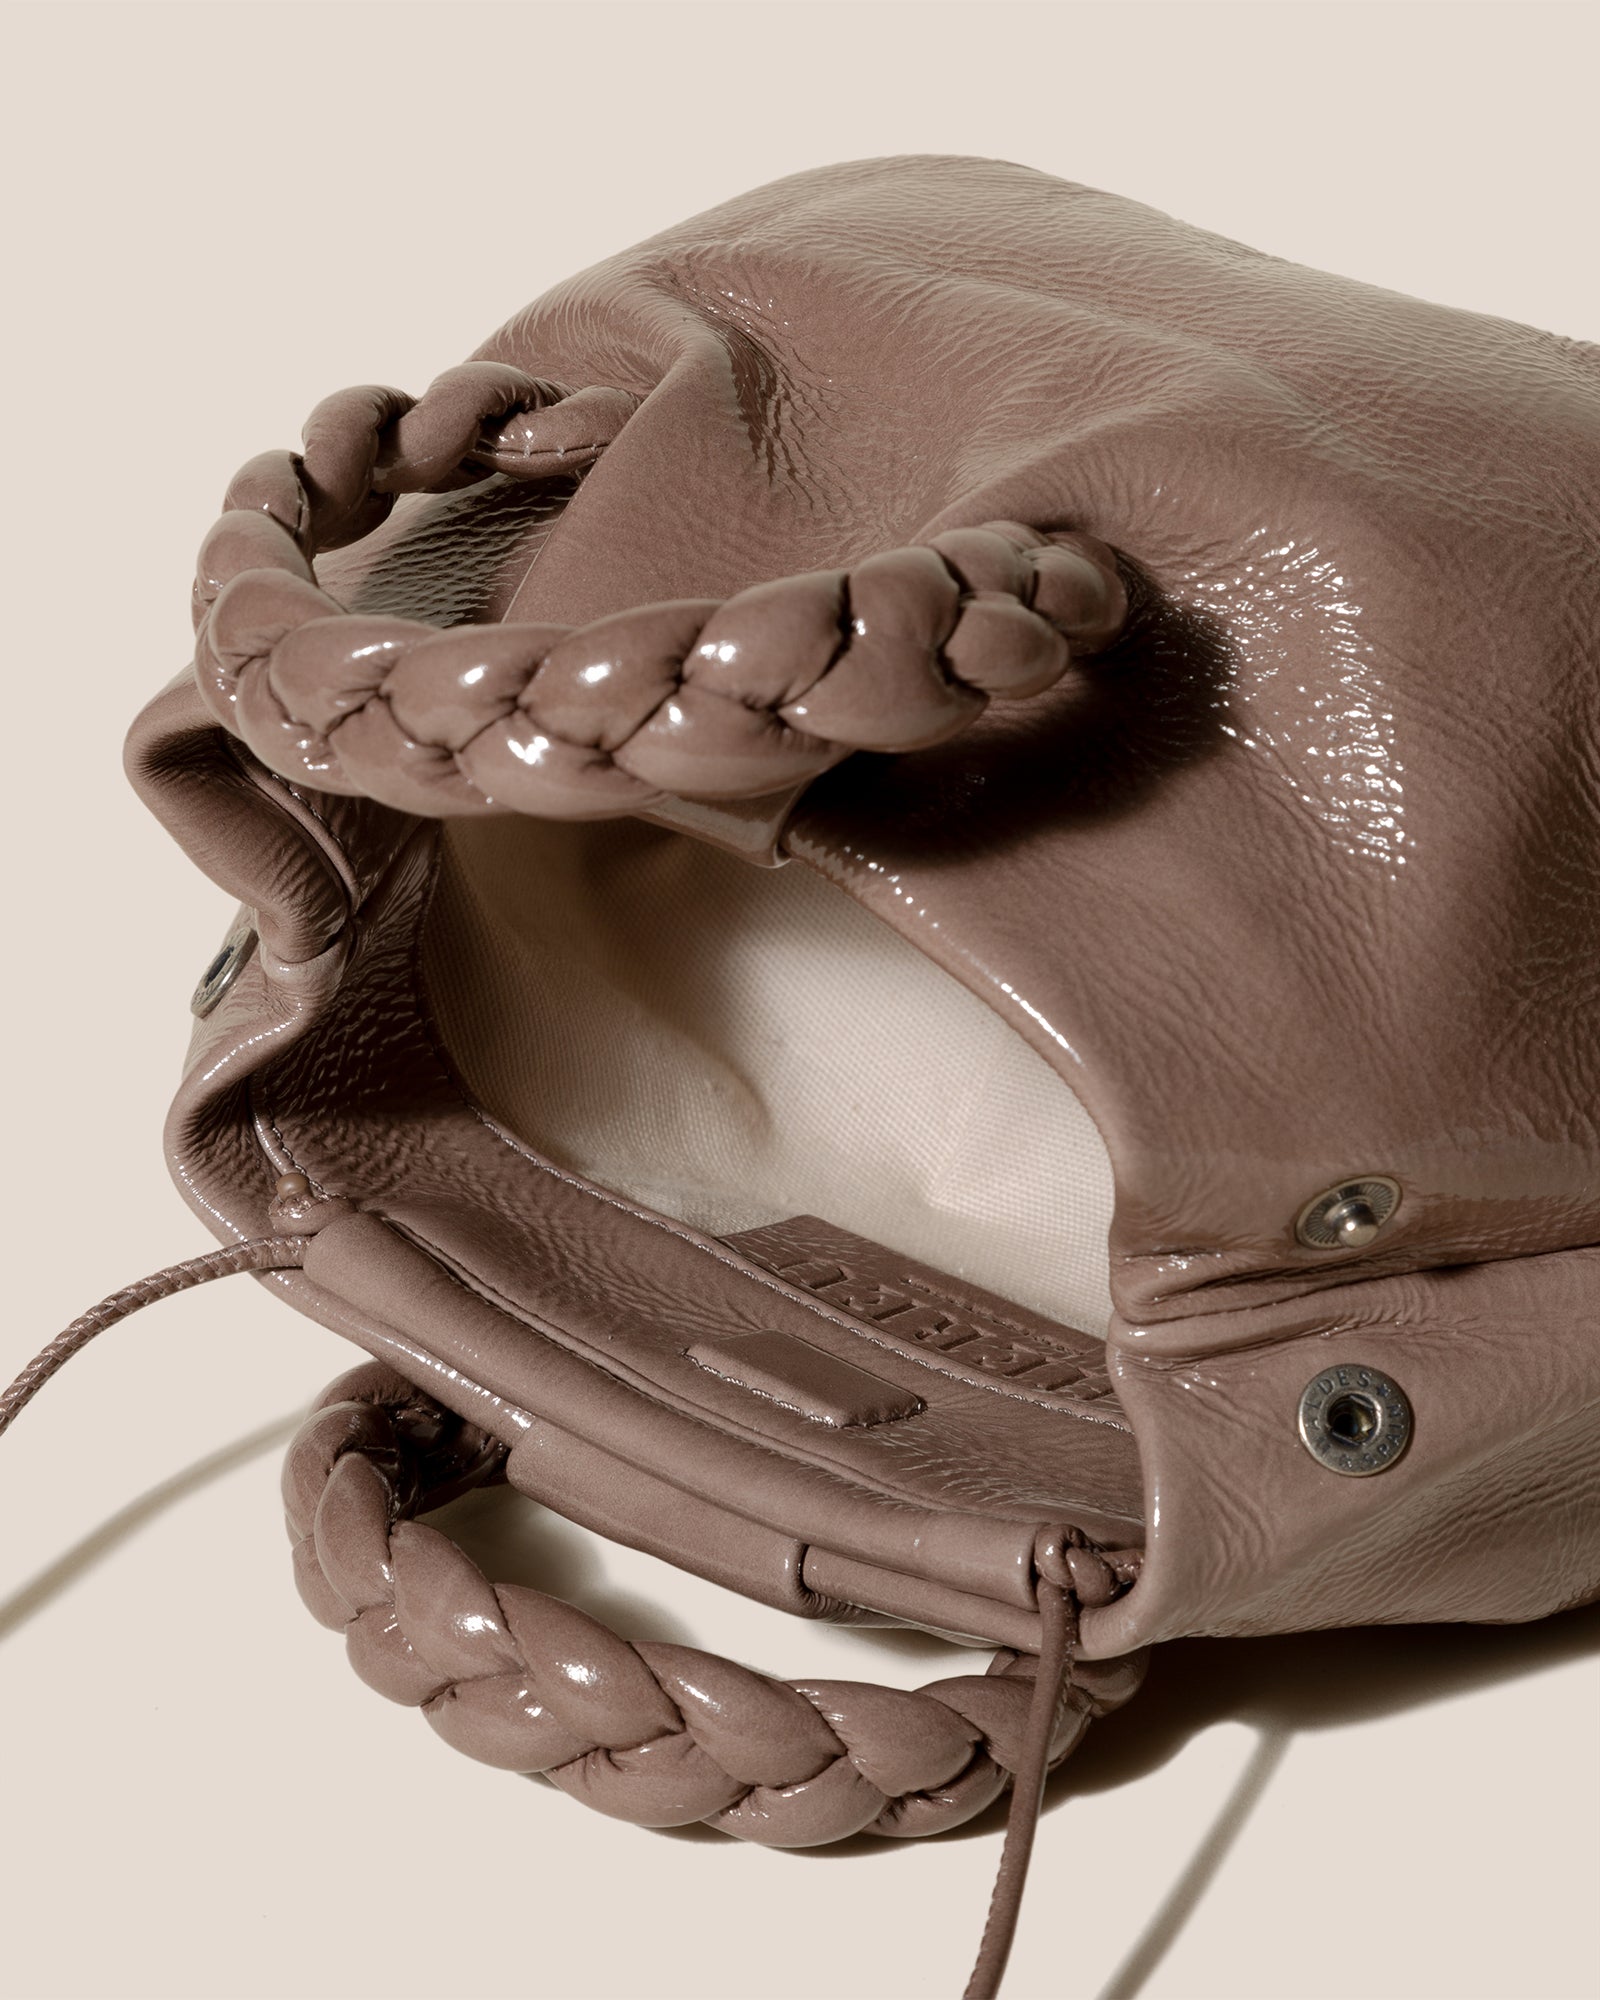 BOMBON M TUMBLED SHINY - Plaited-handle Leather Crossbody Bag – Hereu Studio